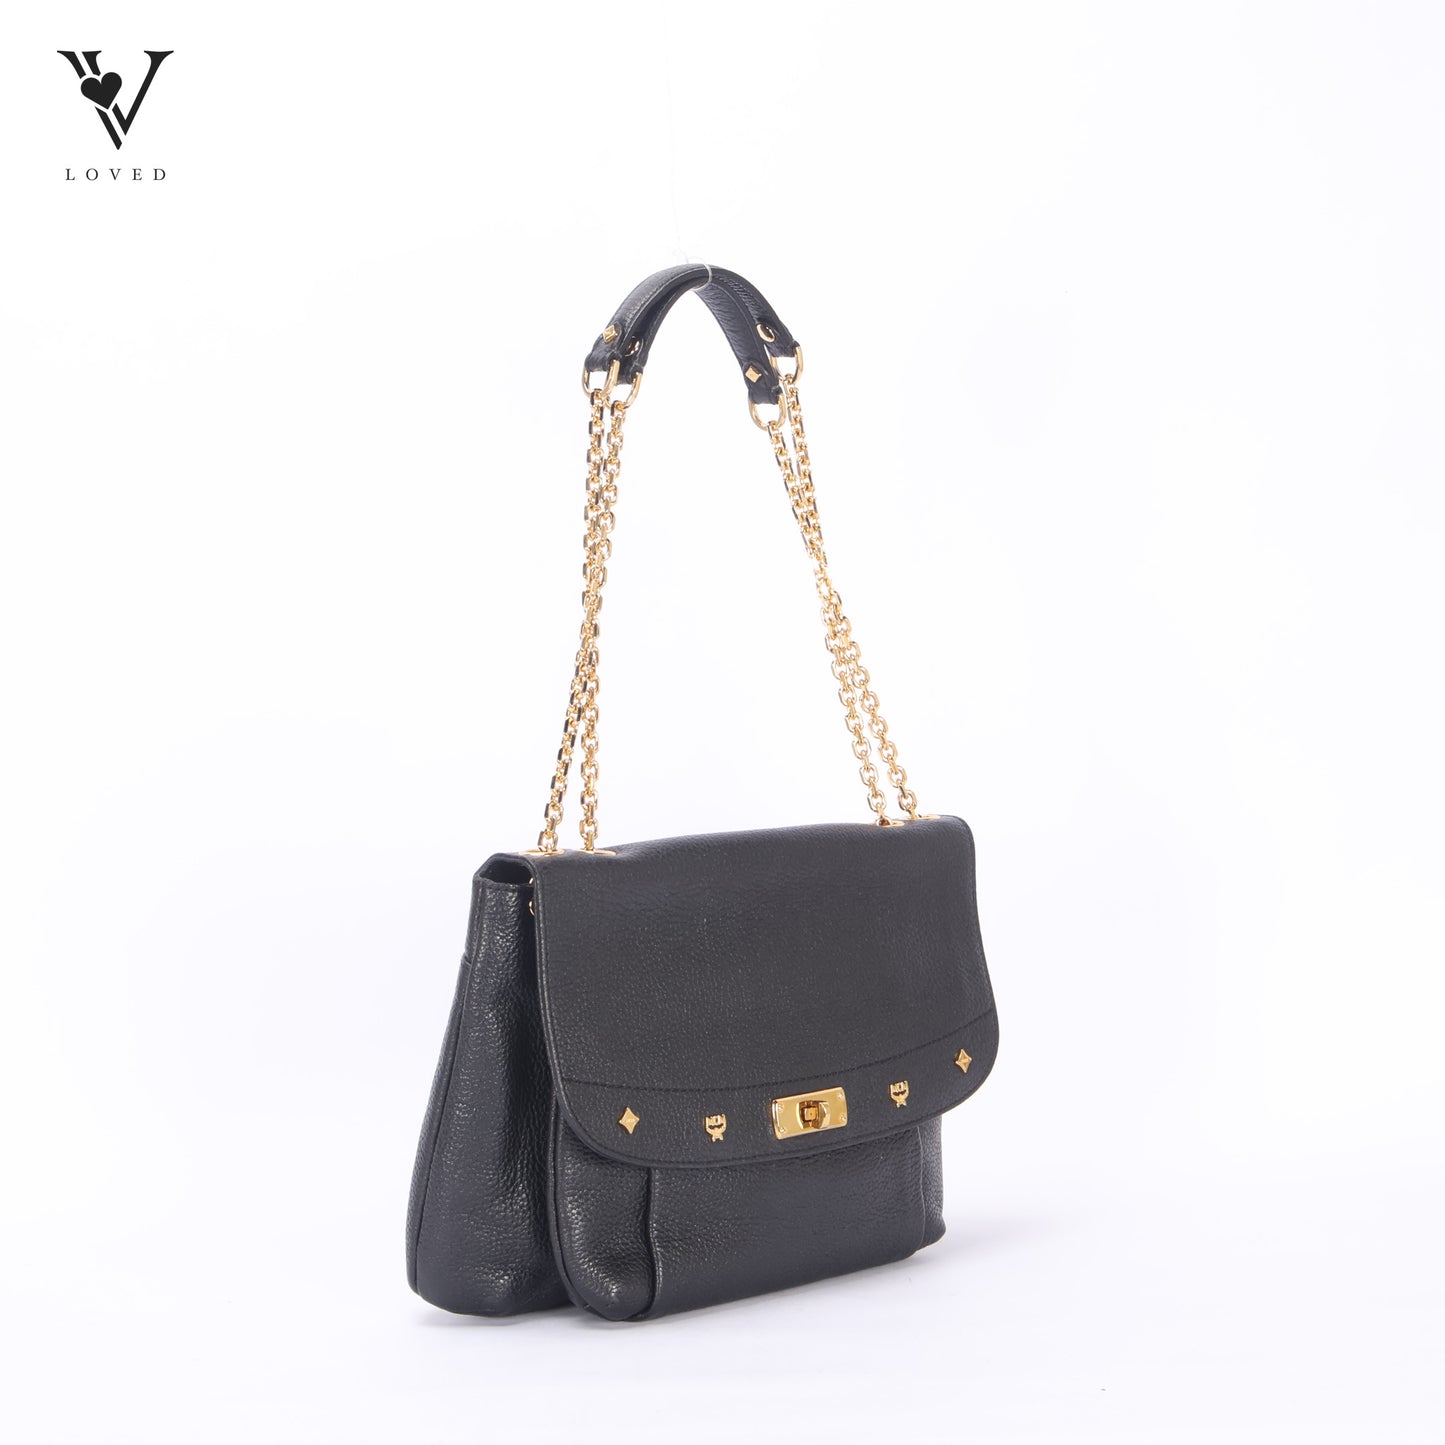 Studded Black Leather Chain Shoulder Bag